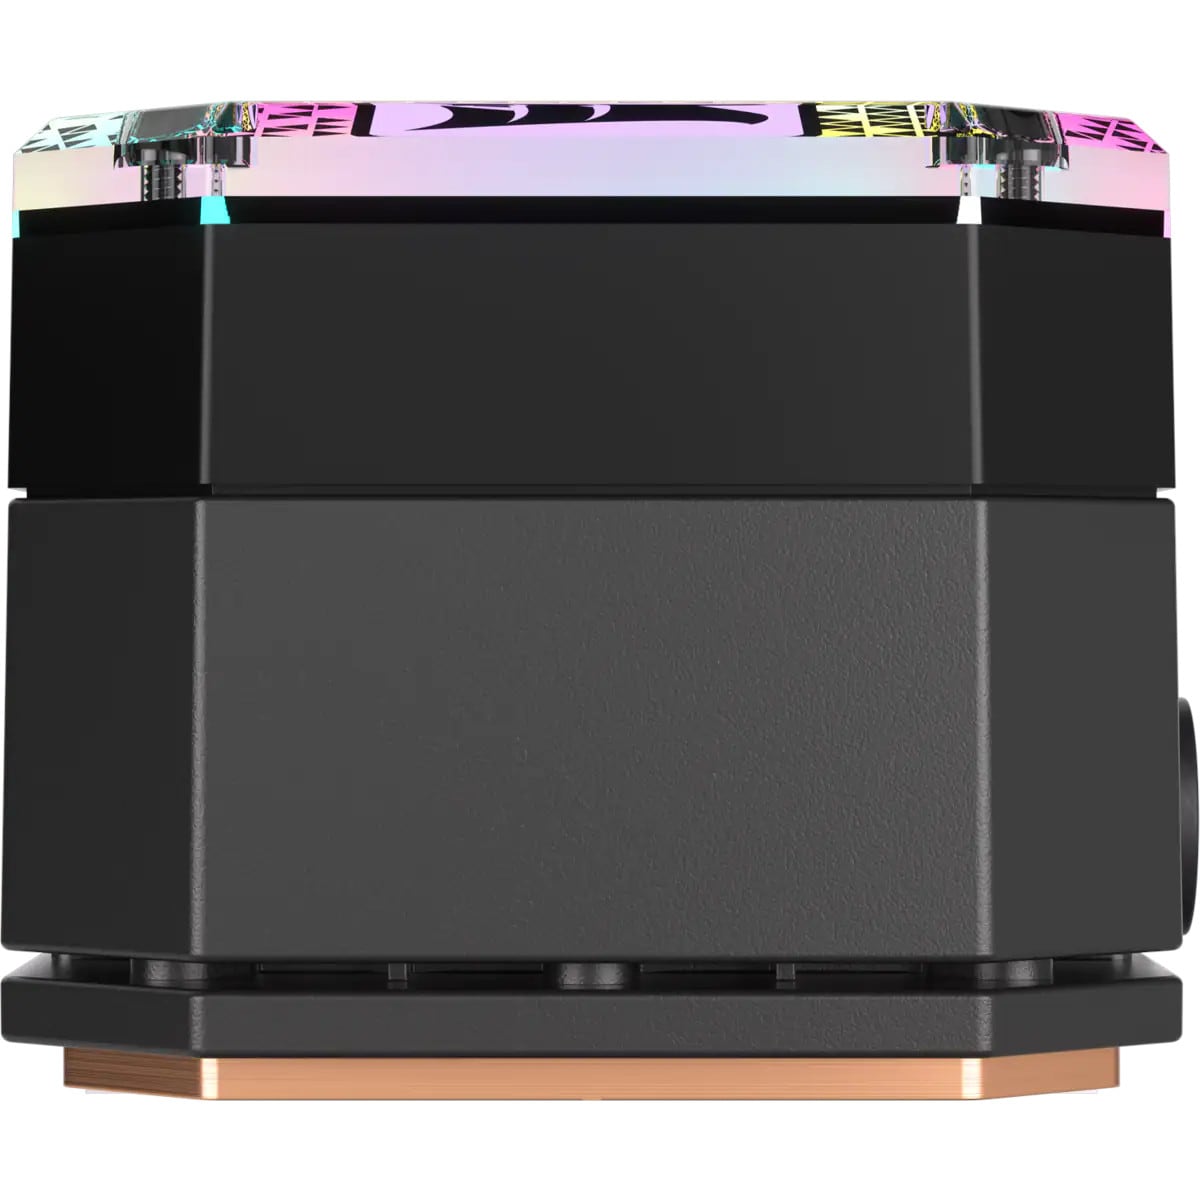 Corsair ICUE H150i Elite XT LCD RGB Wasserkühlung 360mm Intel und AMD CPU  ++ Cyberport